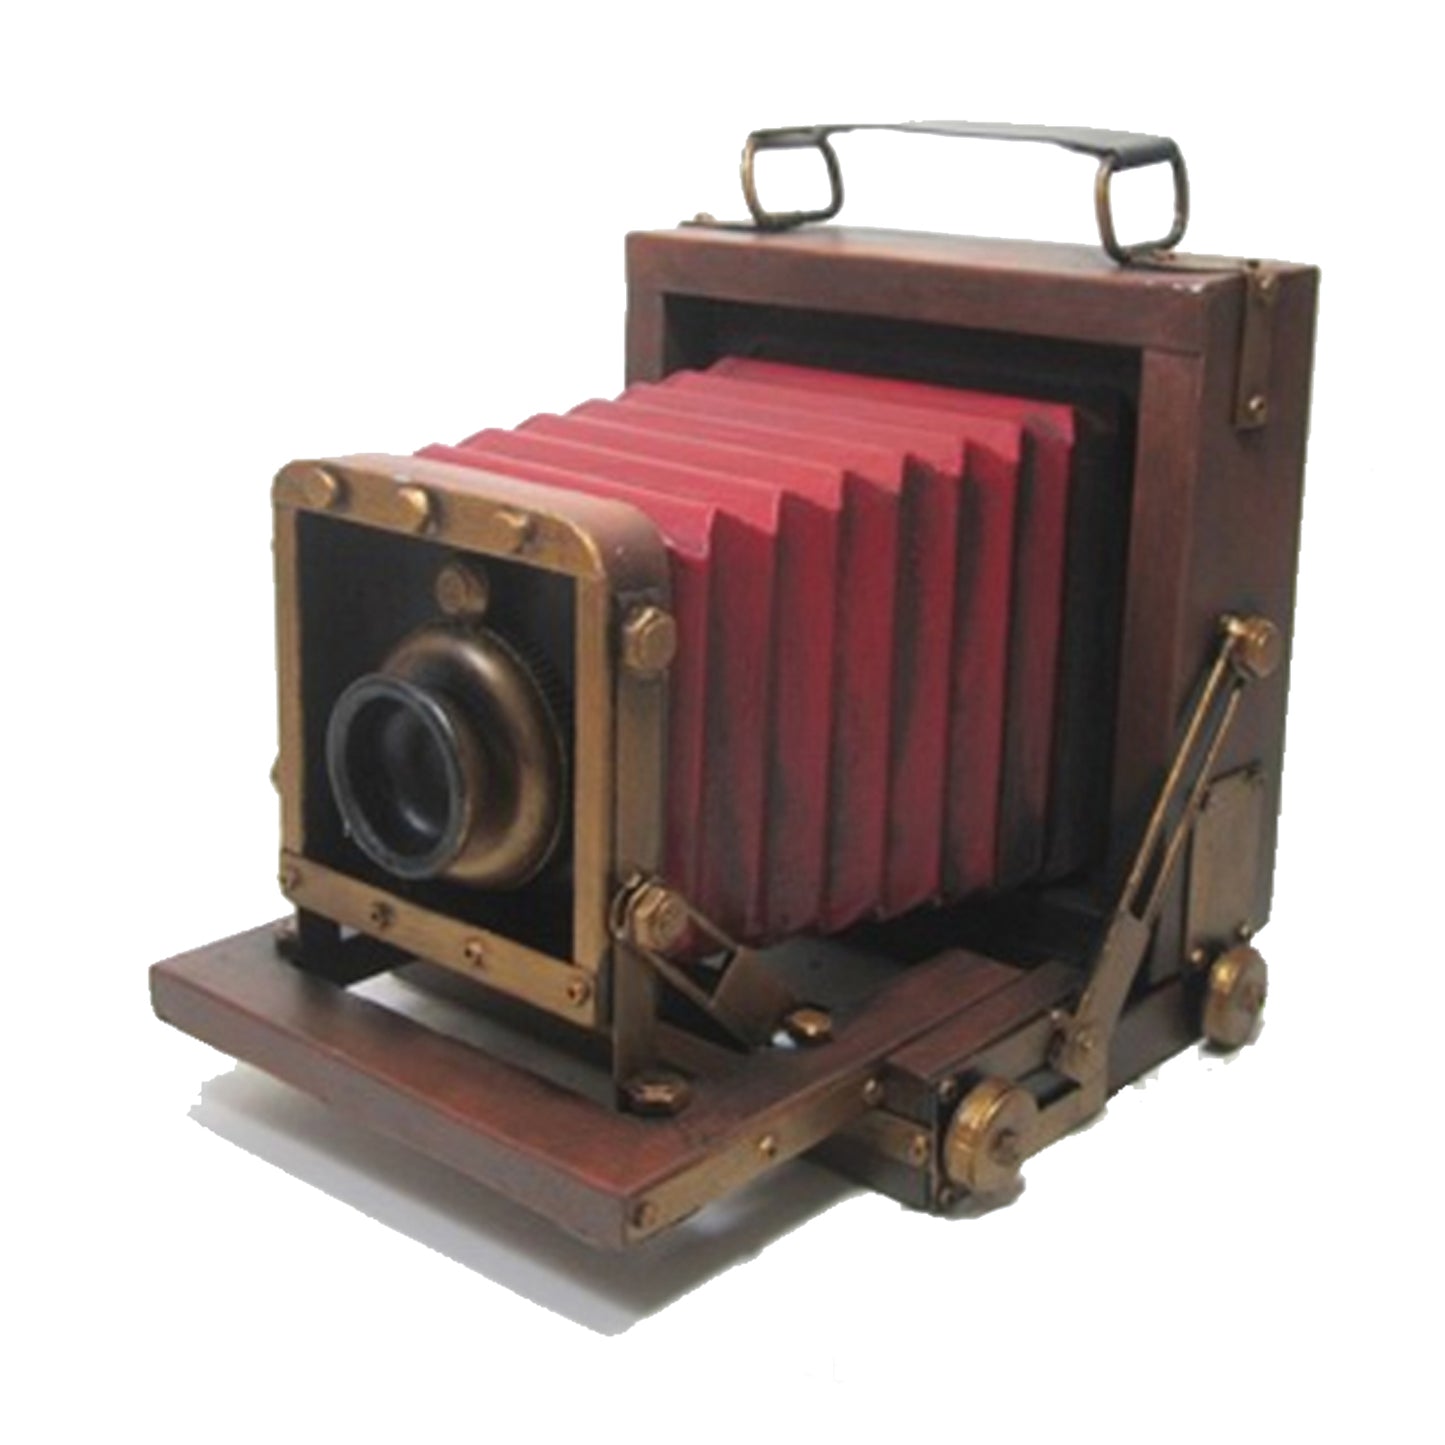 Adorno metálico cámara vintage 19x17x17 cm.